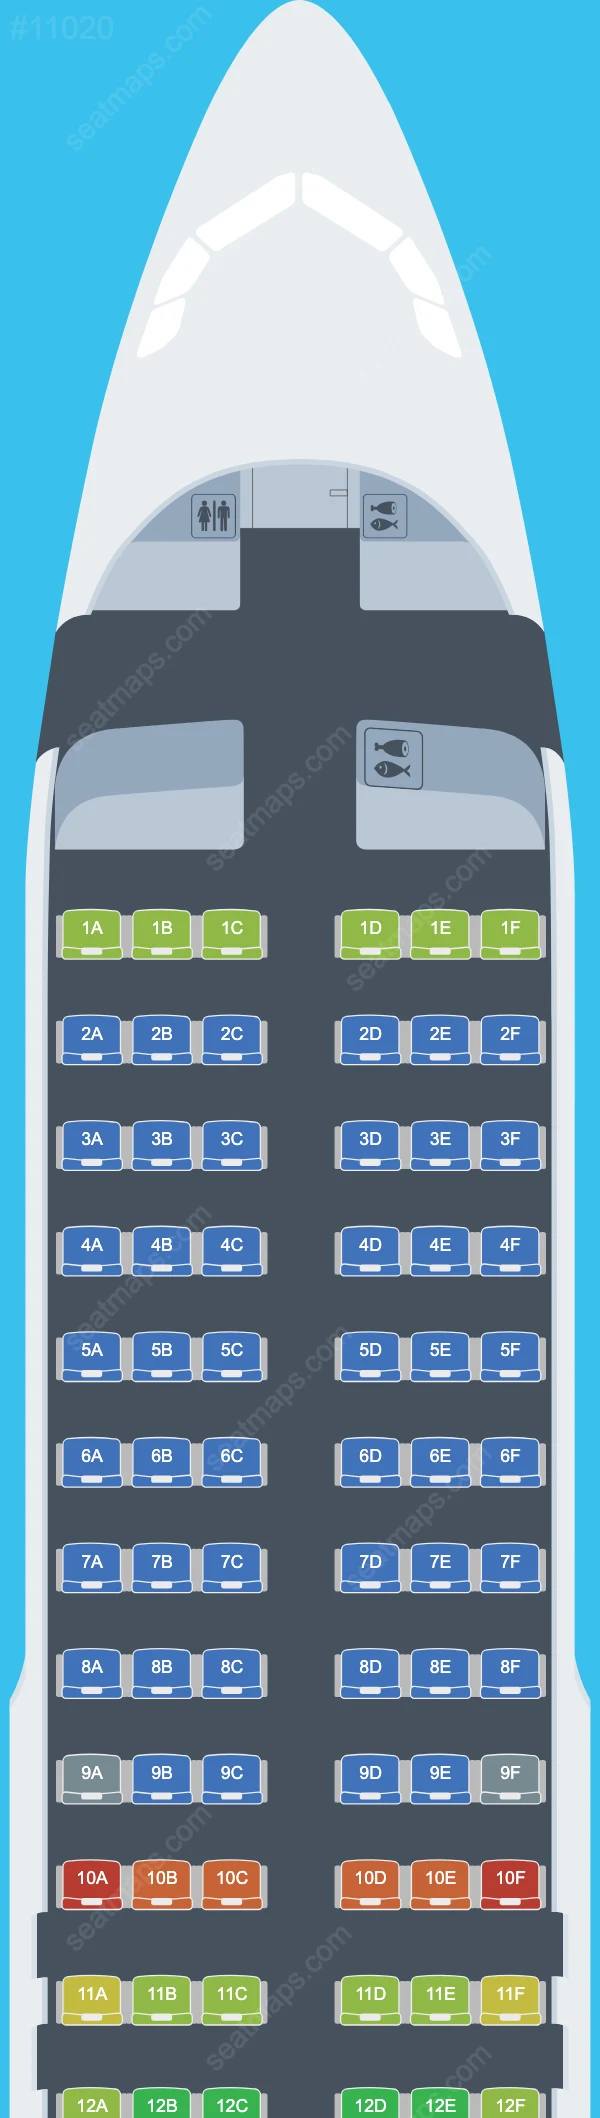 Lufthansa Airbus A320 Seat Maps A320-200 V.2